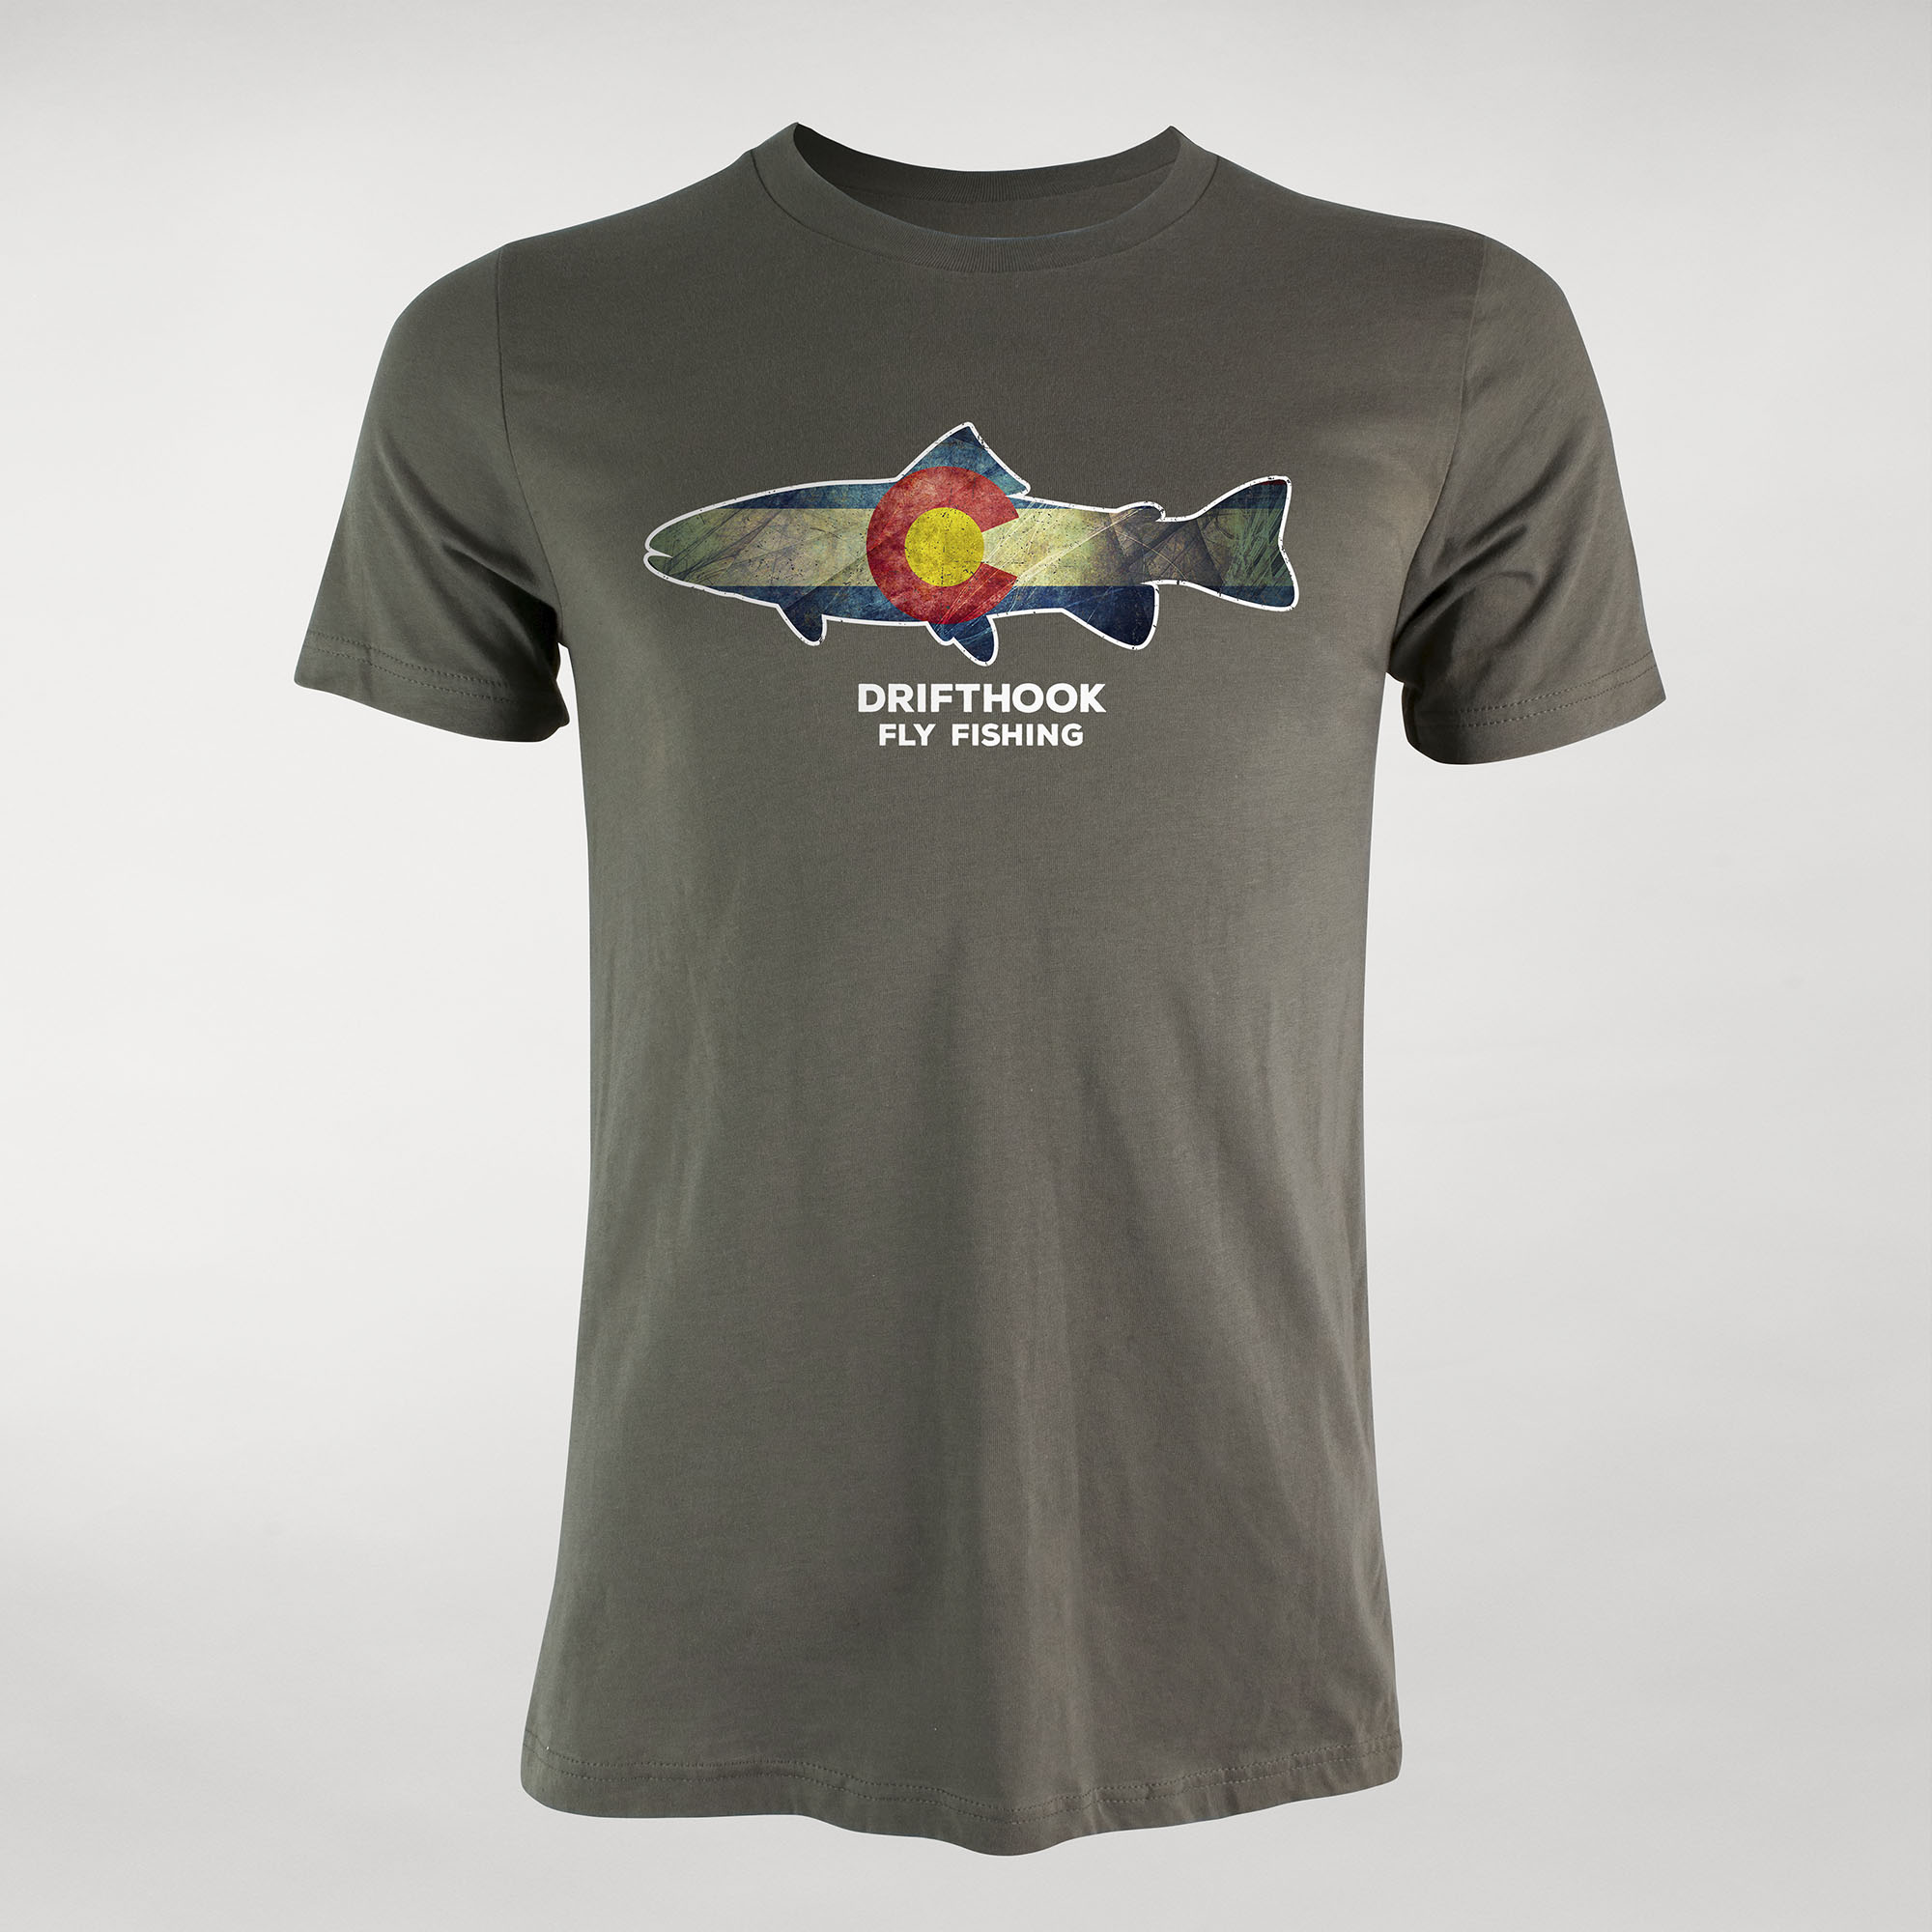 http://drifthook.com/cdn/shop/products/Drifthook_Colorado_Pride_Mens_T-Shirt-A_7c07d341-4a7b-4bcc-80c1-68130e2189cc.jpg?v=1612214568